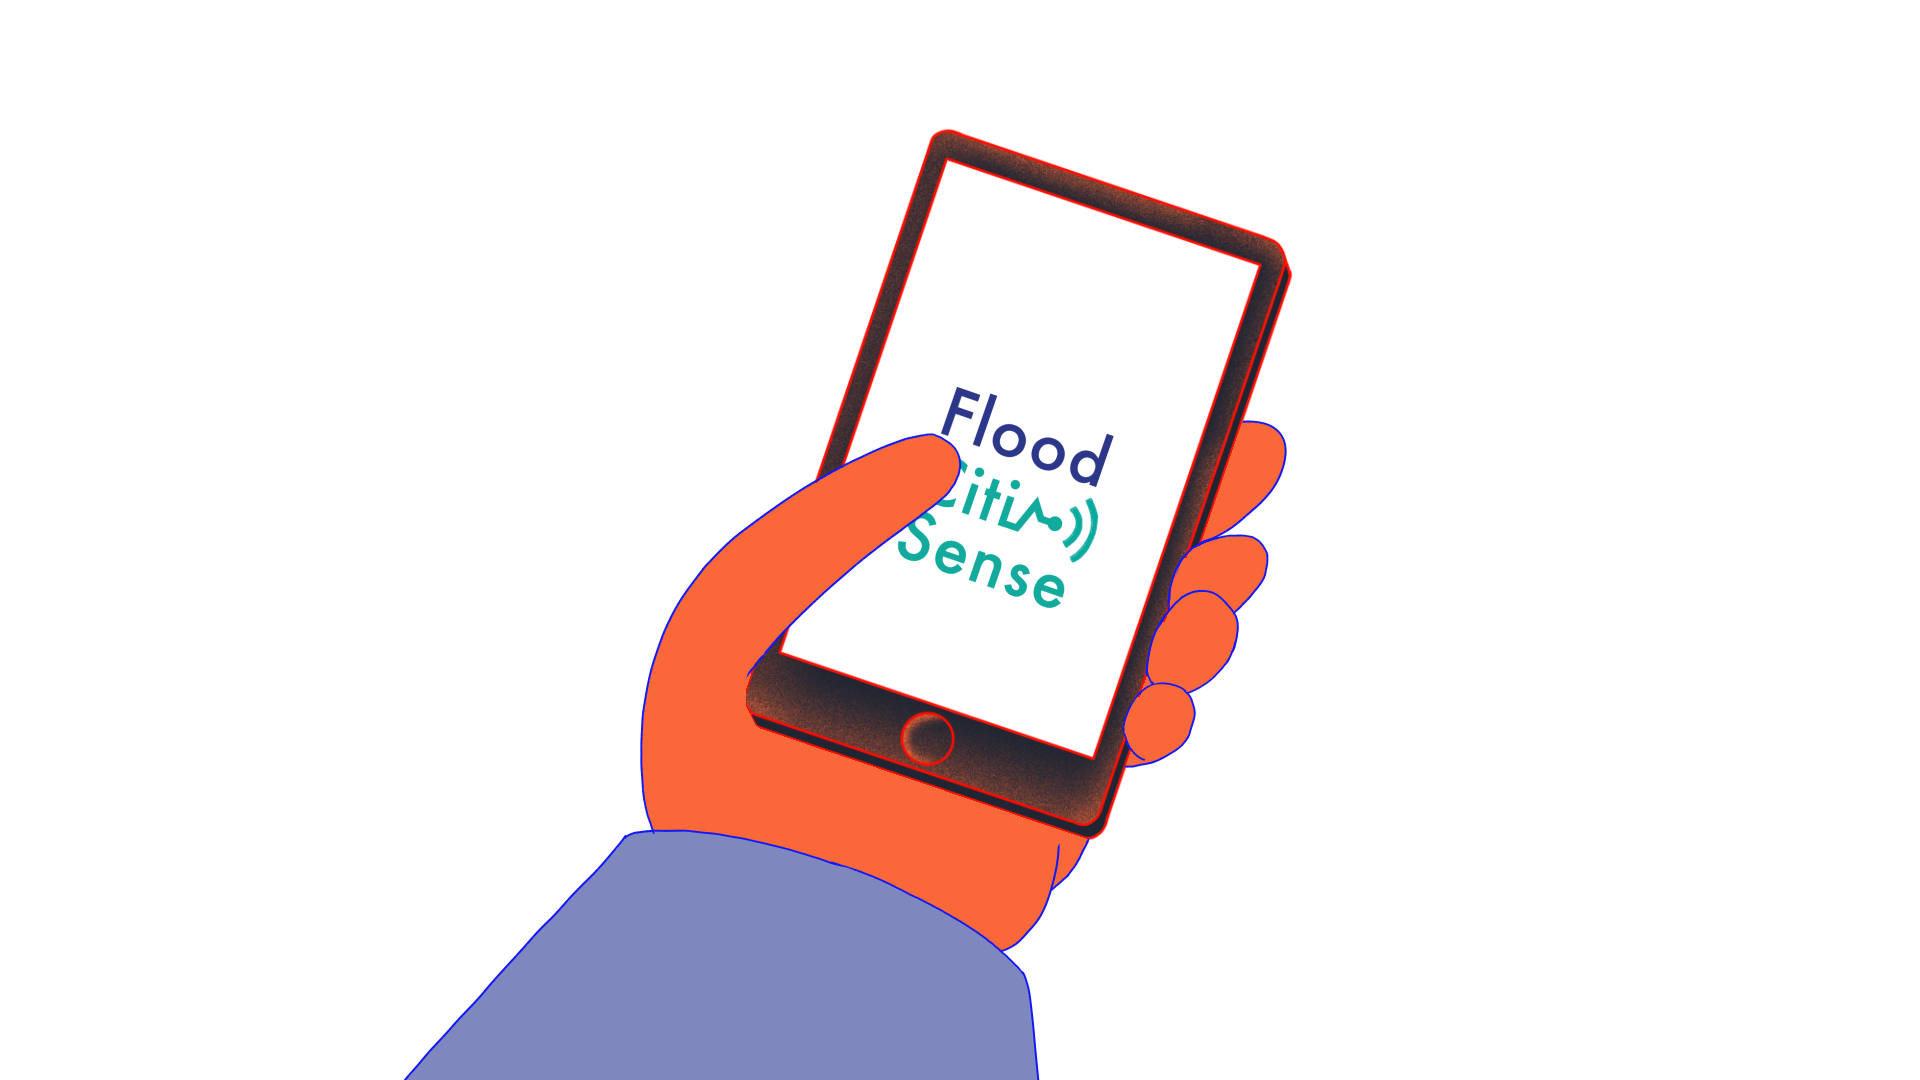 InundaciónCitiSense App de alerta de inundaciones de origen colectivo